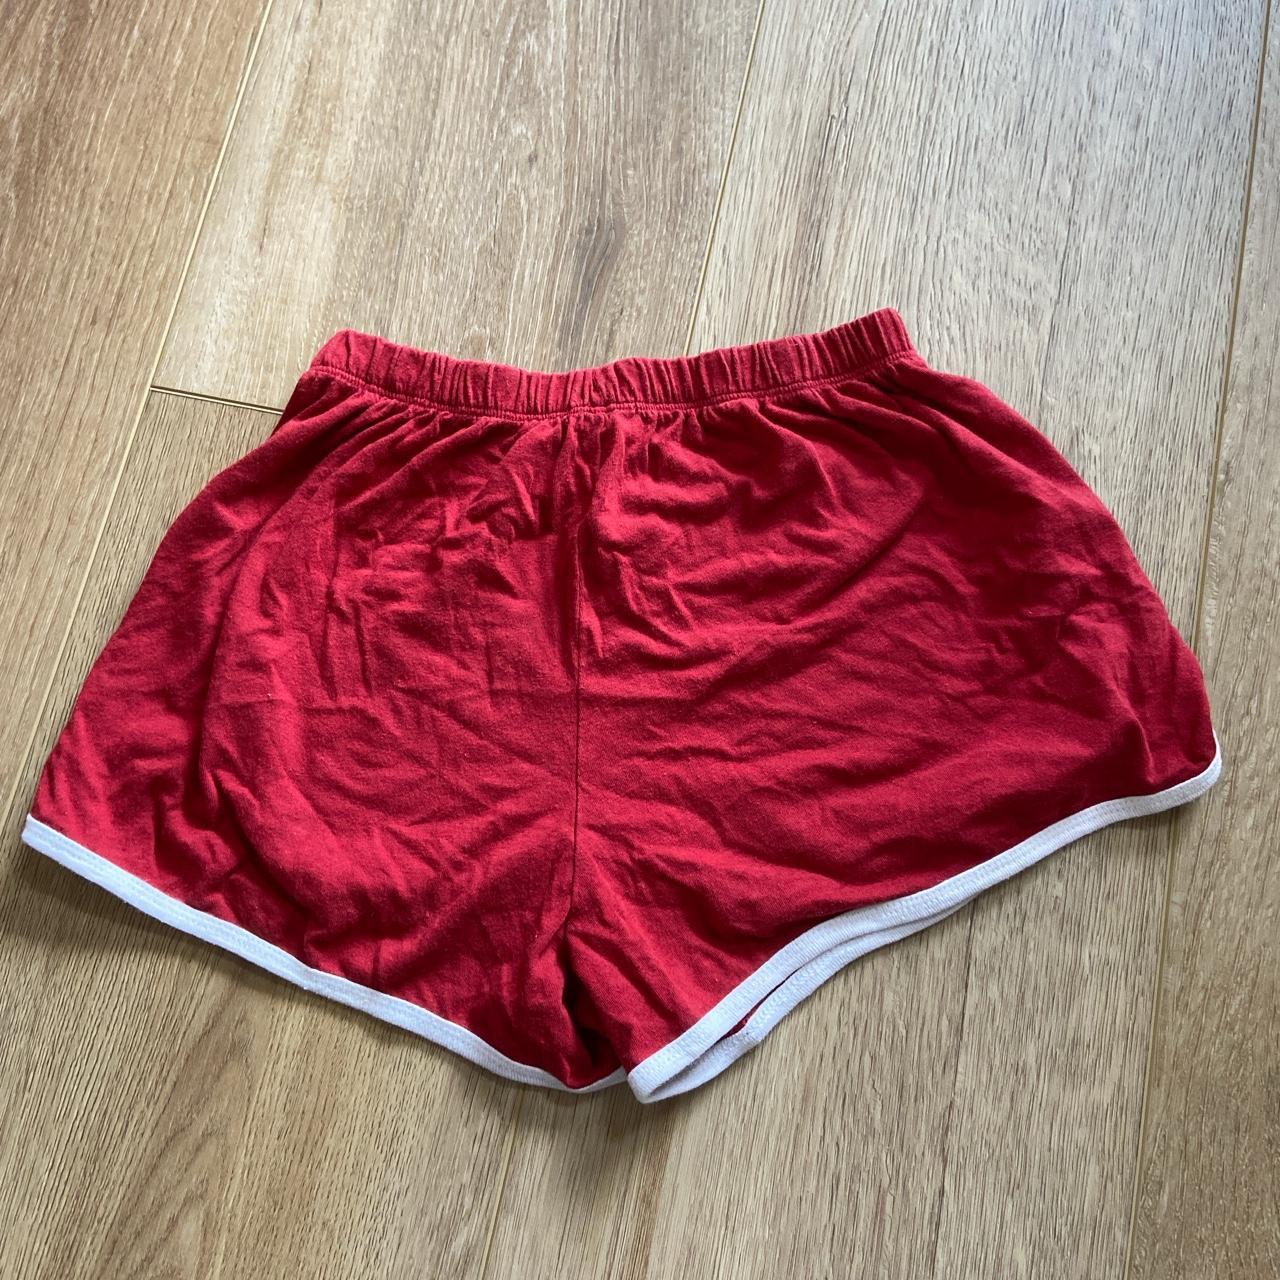 BRANDY MELVILLE - red shorts -super comfy - Depop